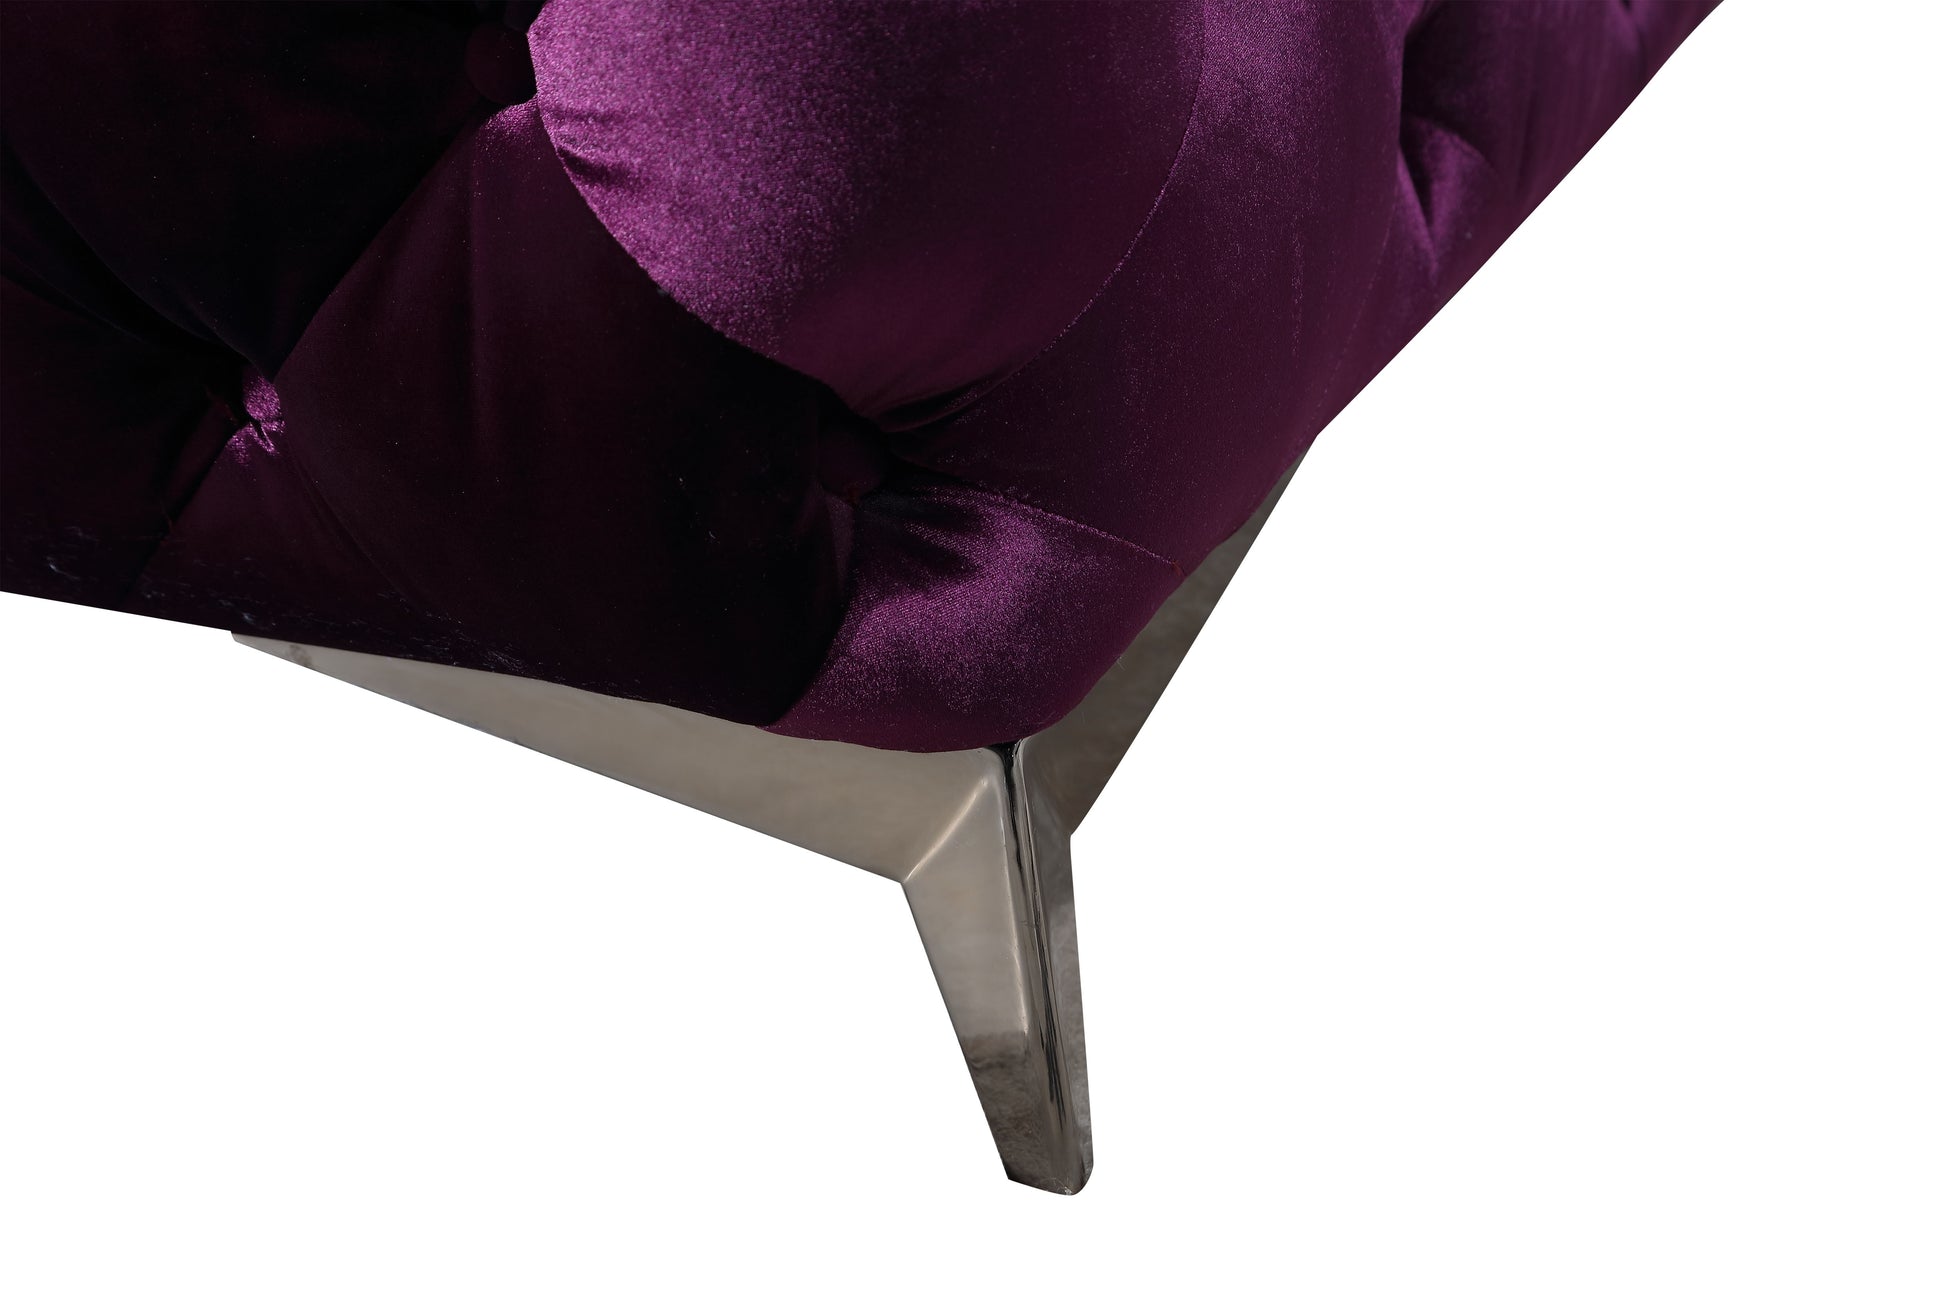 Glitz Sofa Purple by JM